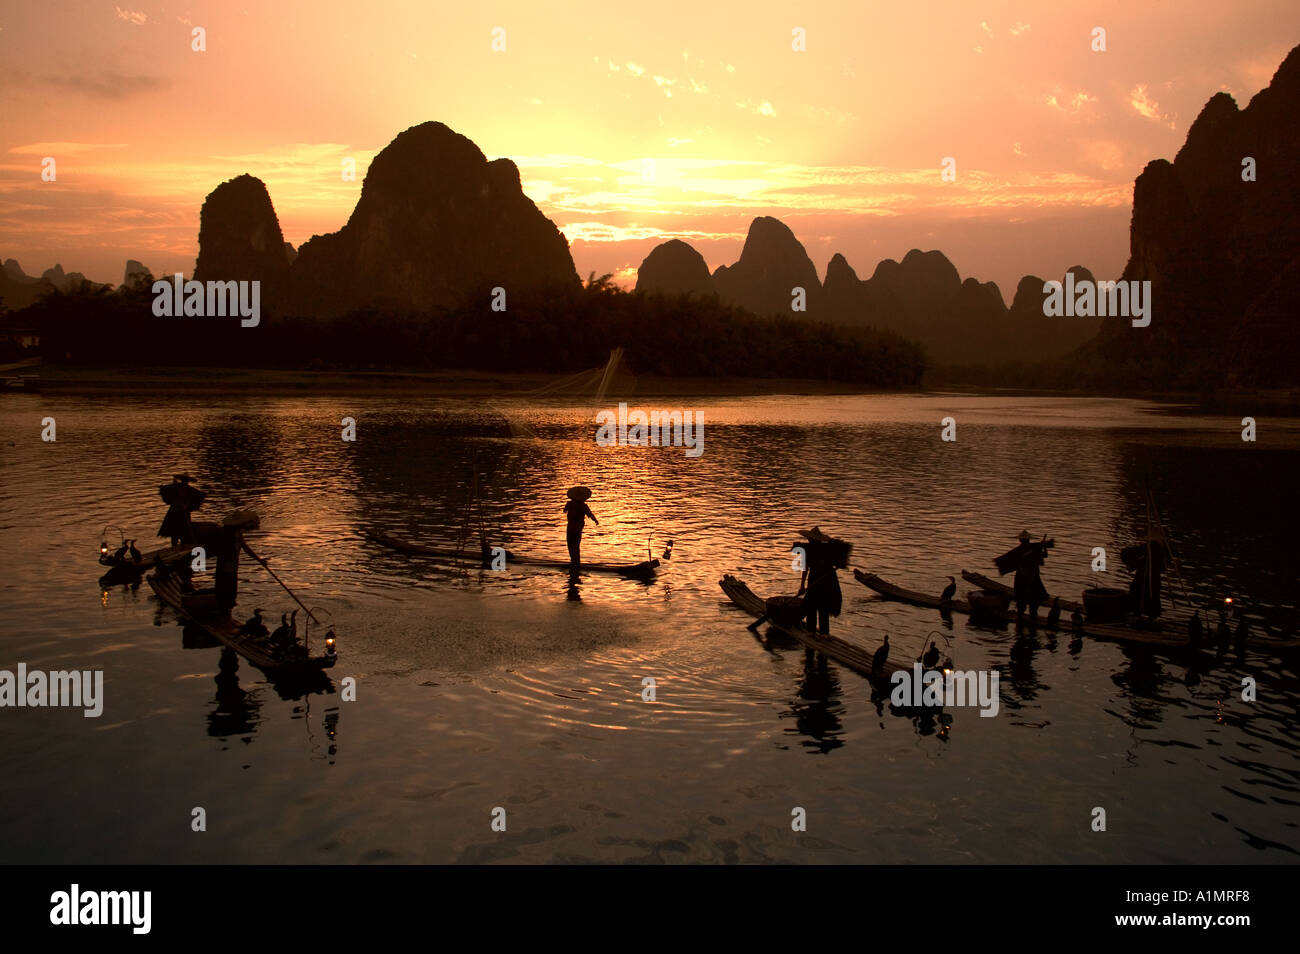 Fishermen on bamboo rafts on Li River at sunset Guangxi Province China Stock Photo